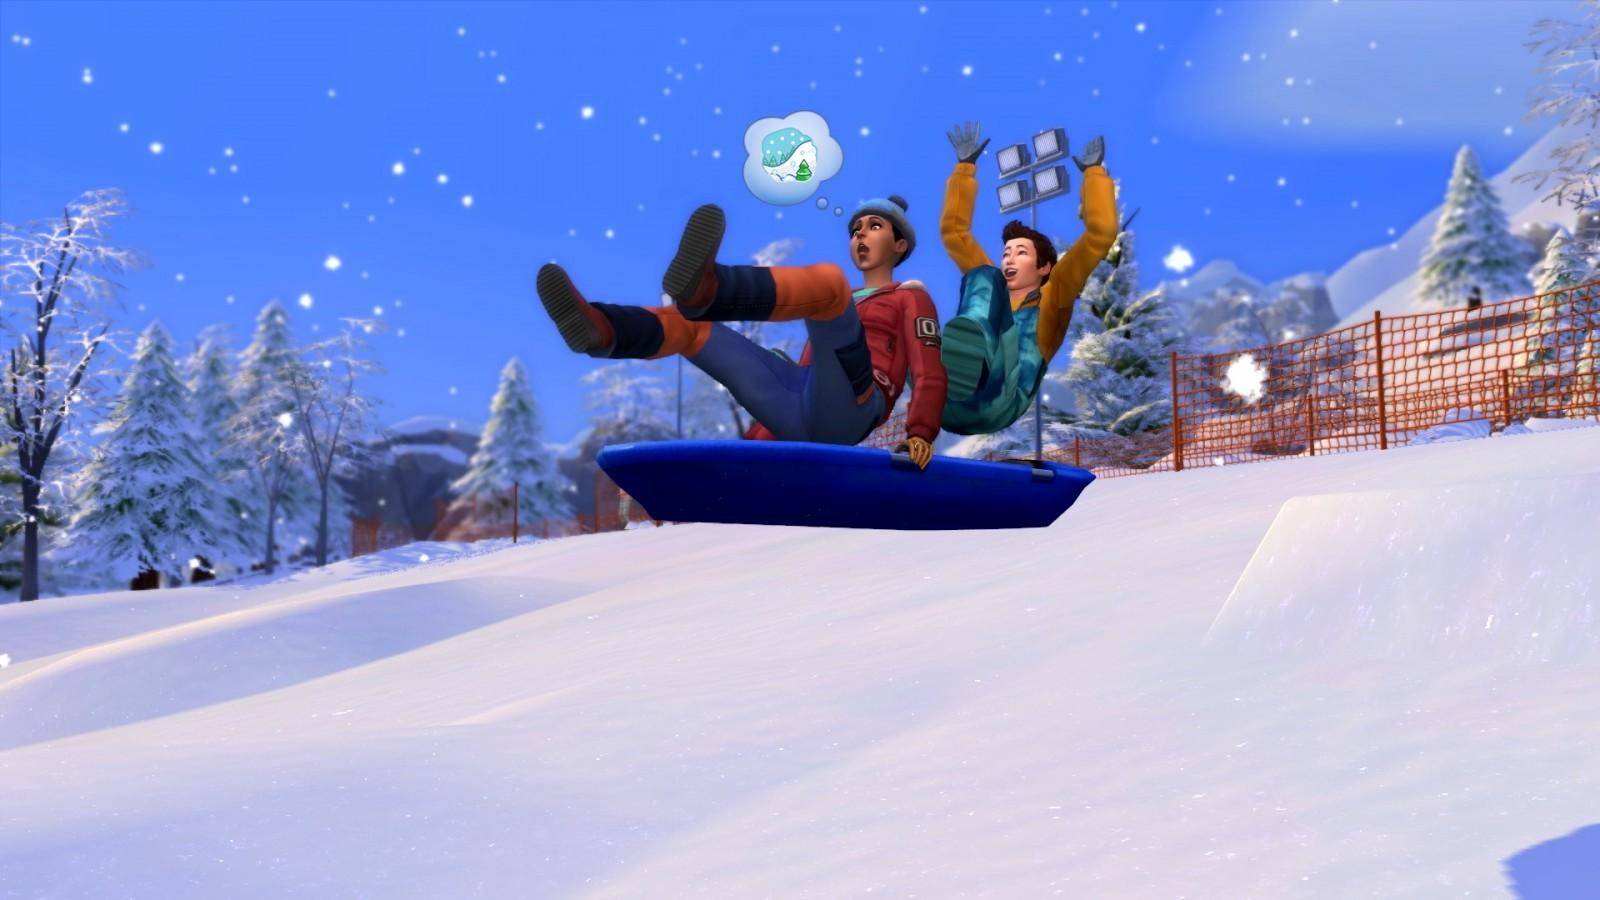 Escapada en la nieve es la increíble expansión de invierno para The Sims 4 2